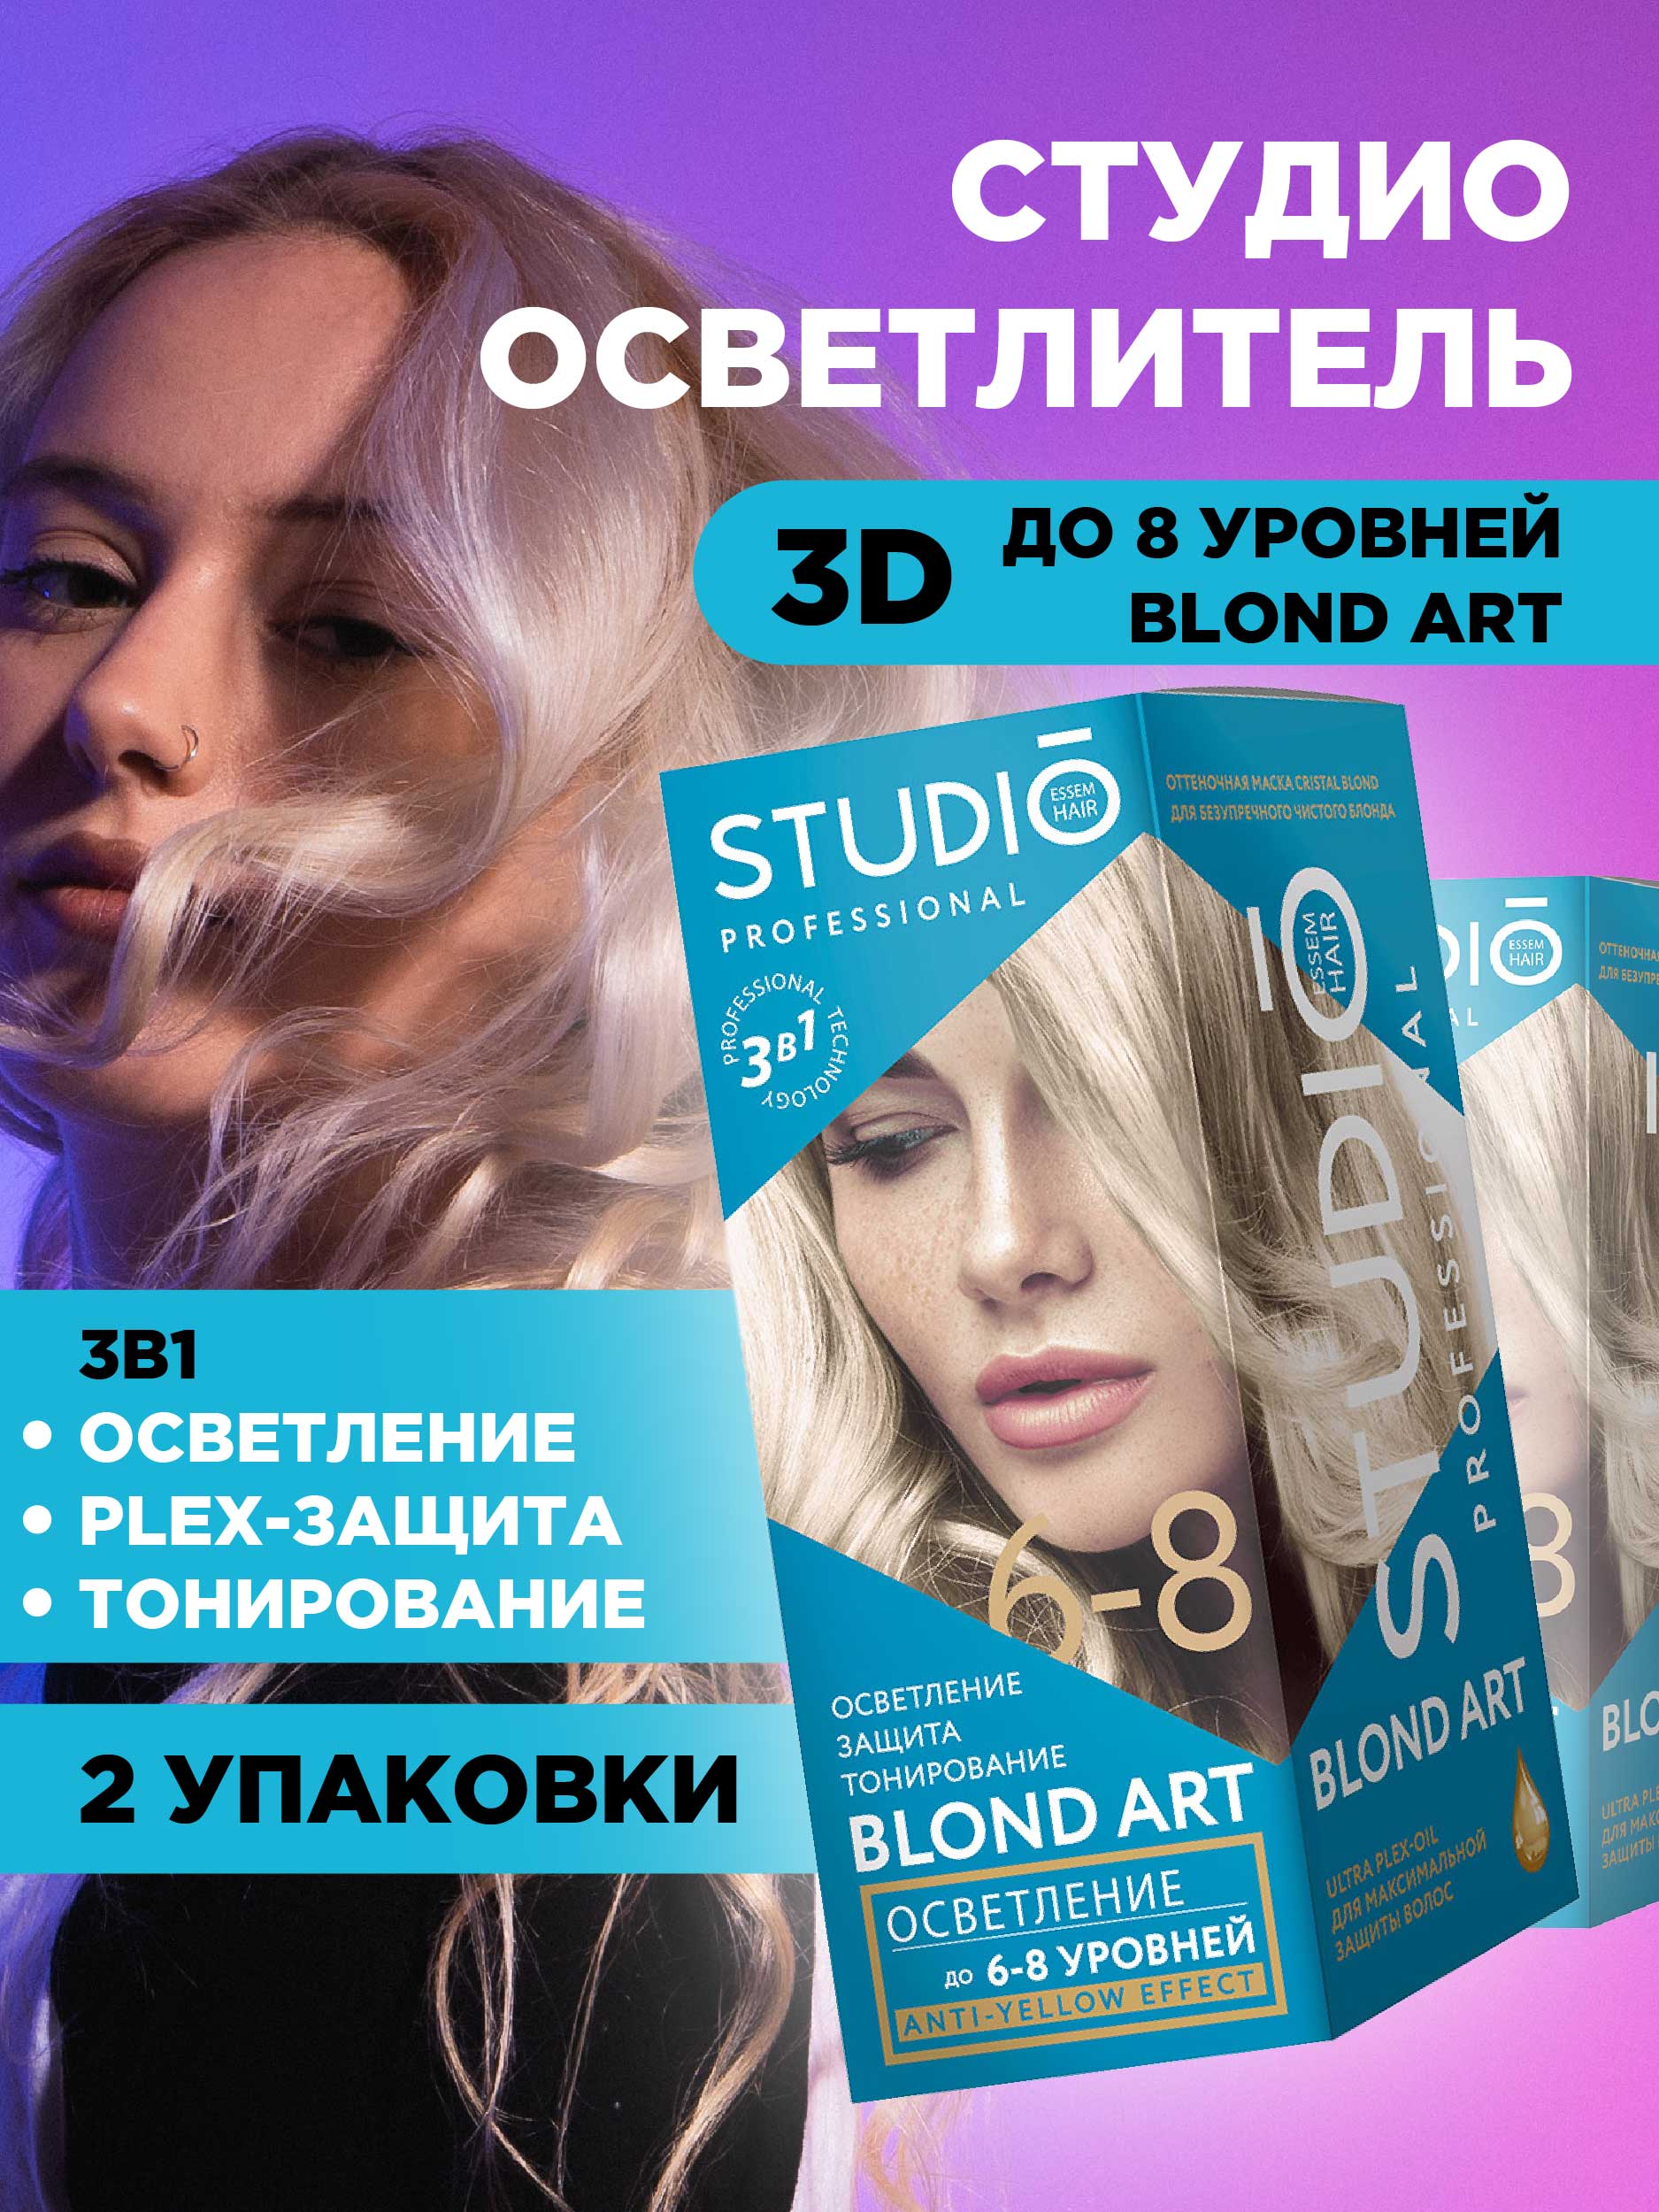 Осветлитель для волос Studio Professional 3D до 8 уровней 2*25гр 2шт три сестры адаптированный текст для 5 уровней владения русским языком с комментариями